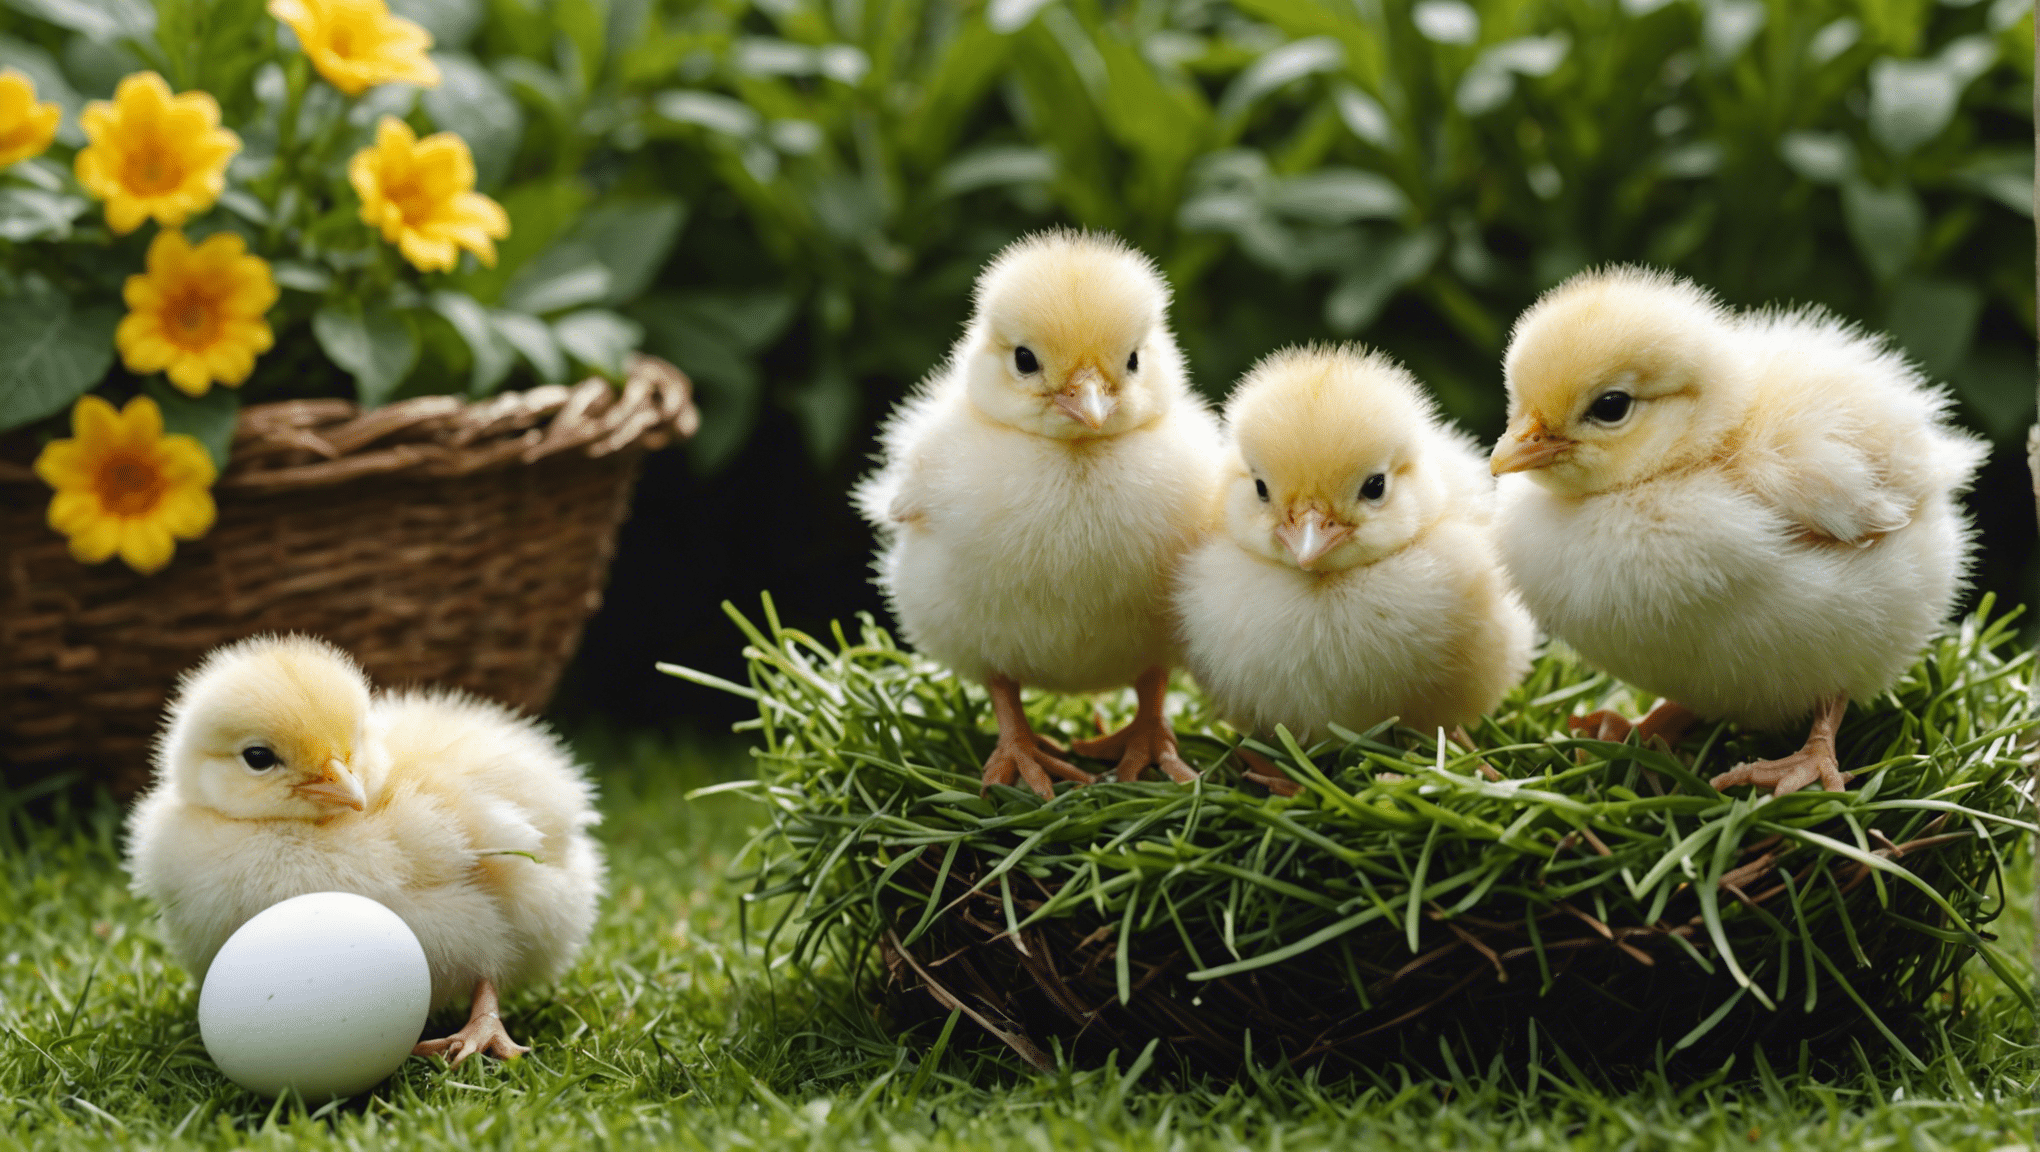 Naučte se, jak odchovávat kuřata z vajec, s naším komplexním průvodcem o líhnutí kuřat a péči o ně.